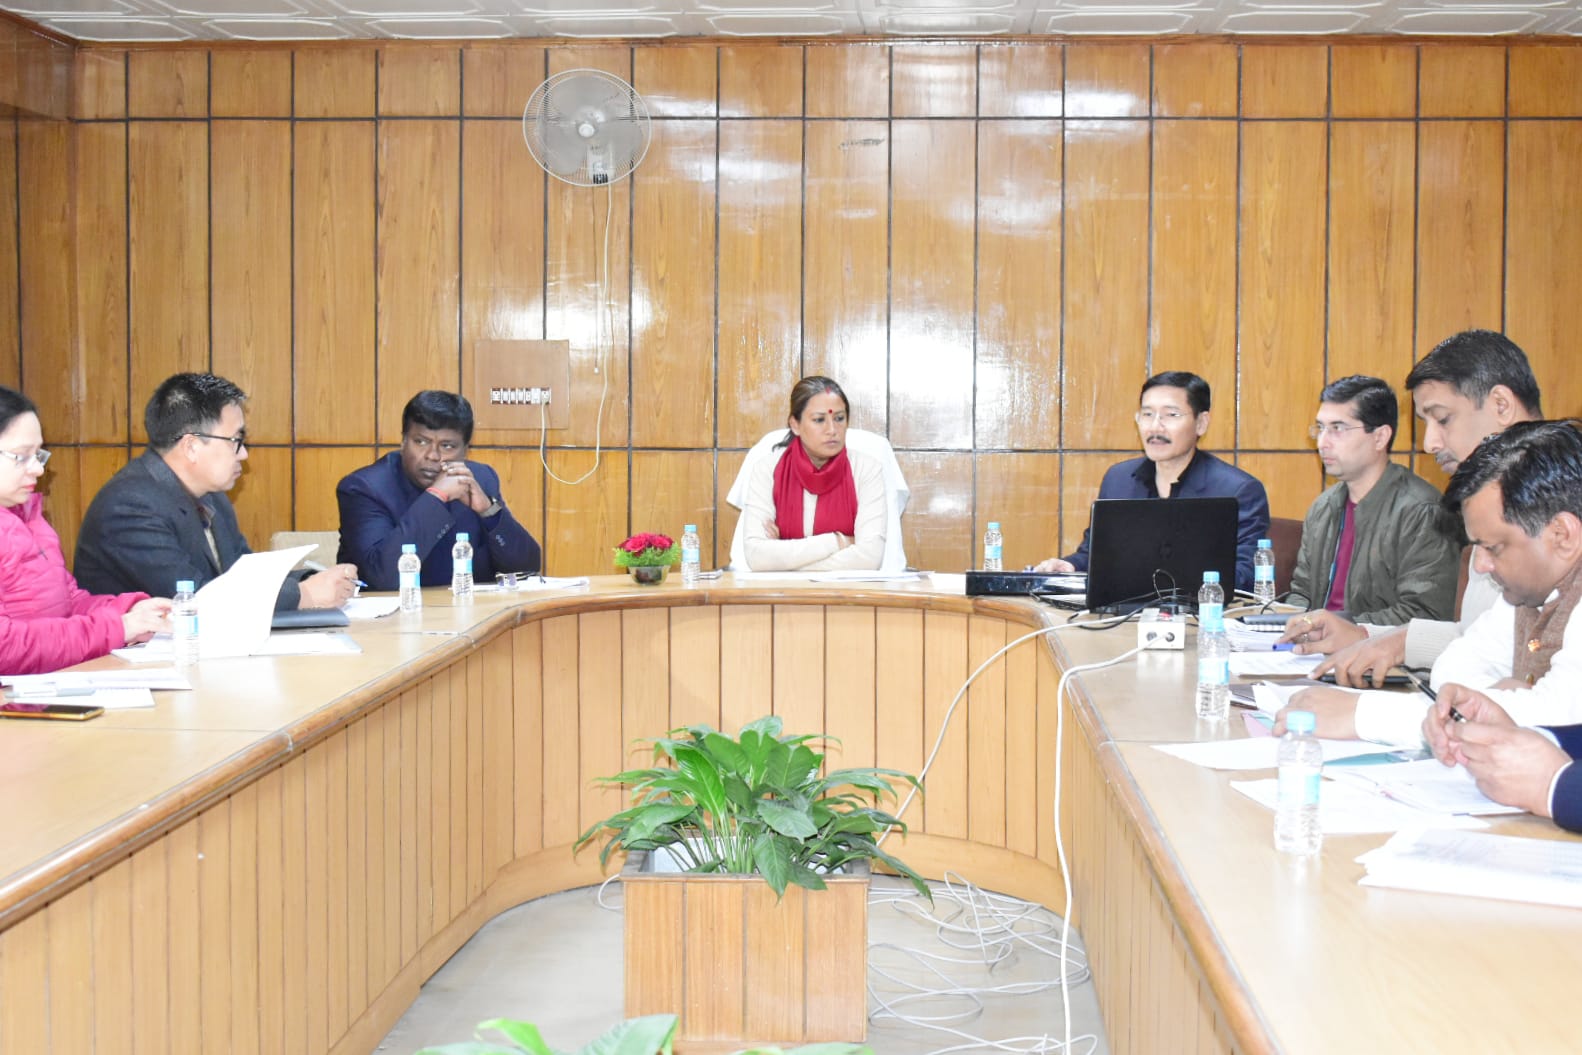 खाद्य मंत्री रेखा आर्या ने ली खाद्य विभाग की महत्वपूर्ण विषयों के संबंध में समीक्षा बैठक